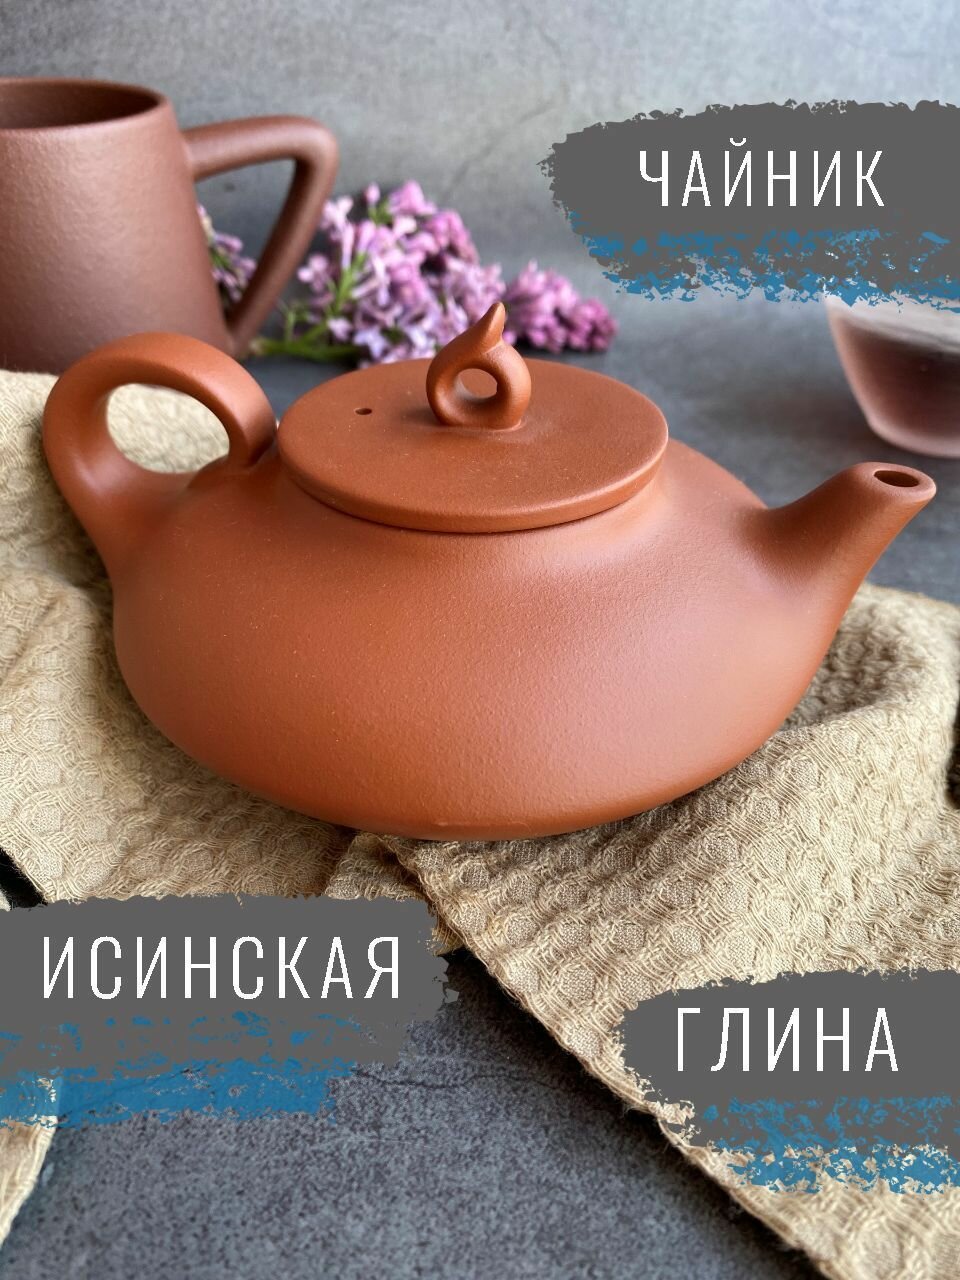 Исинский чайник для чайной церемонии